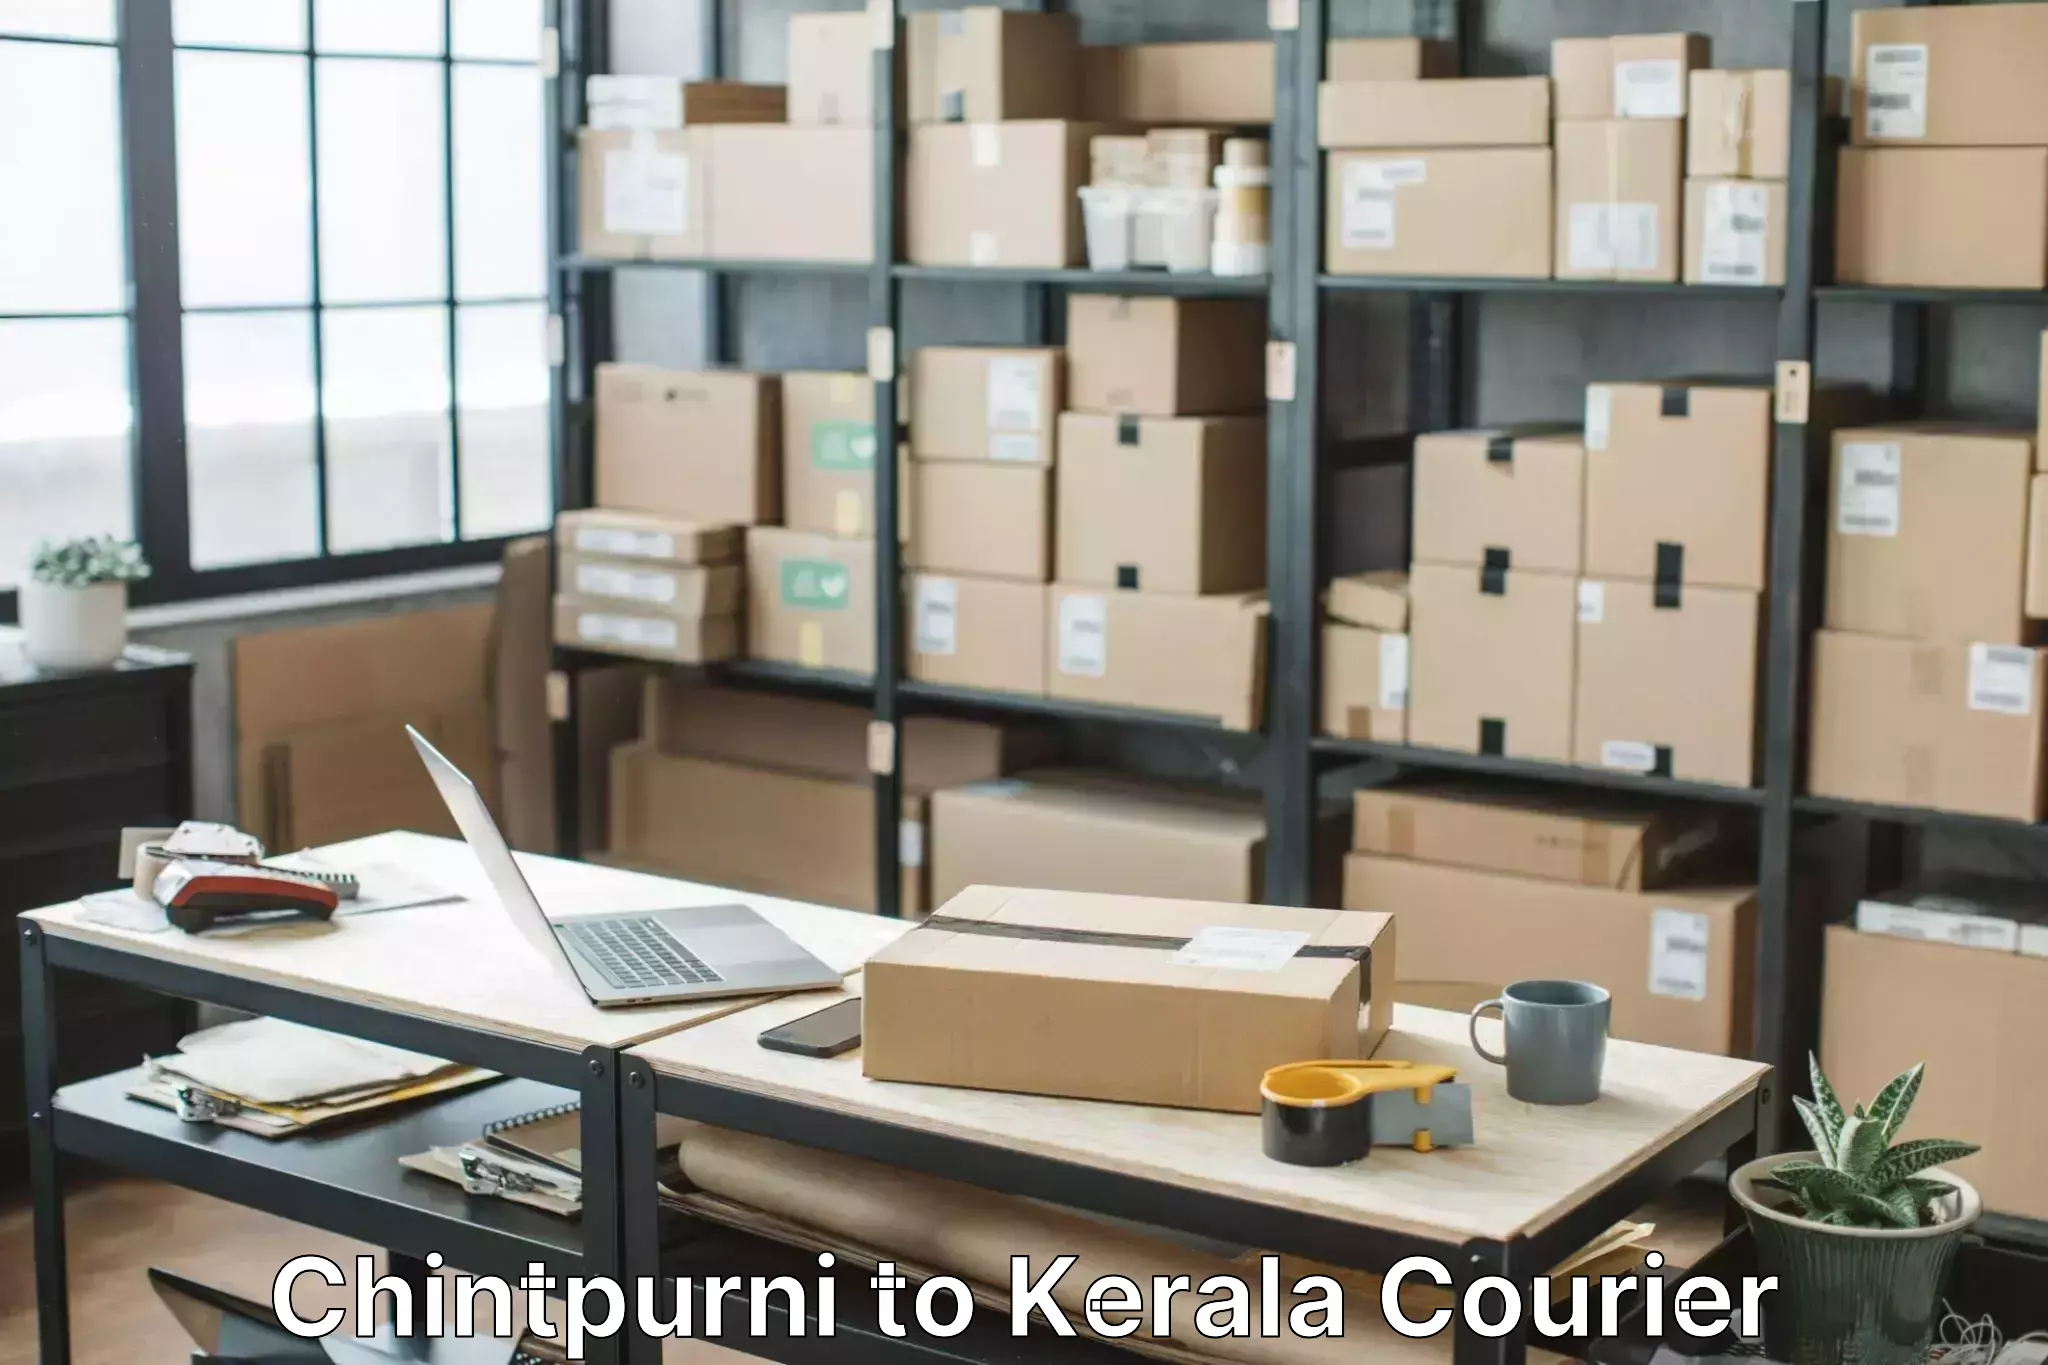 Door-to-door relocation services Chintpurni to Kerala